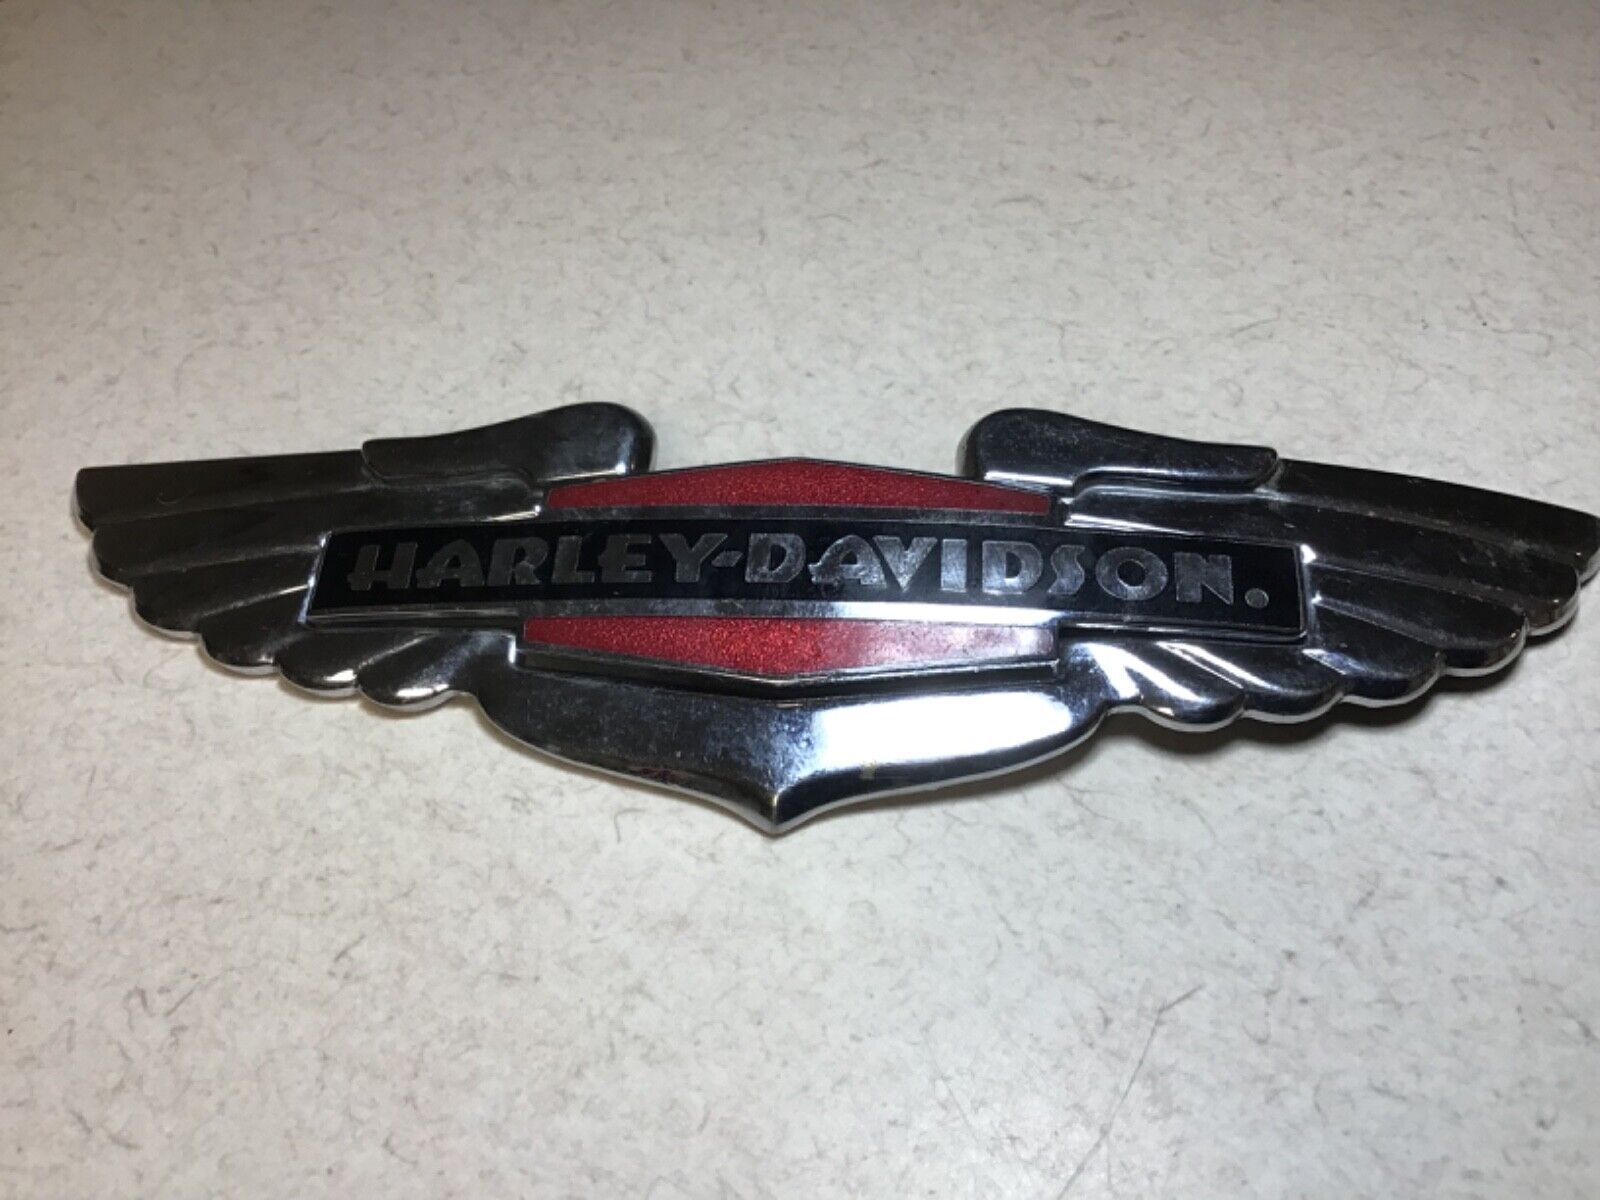 Vintage Harley-Davidson Motorcycle Medallion Emblem